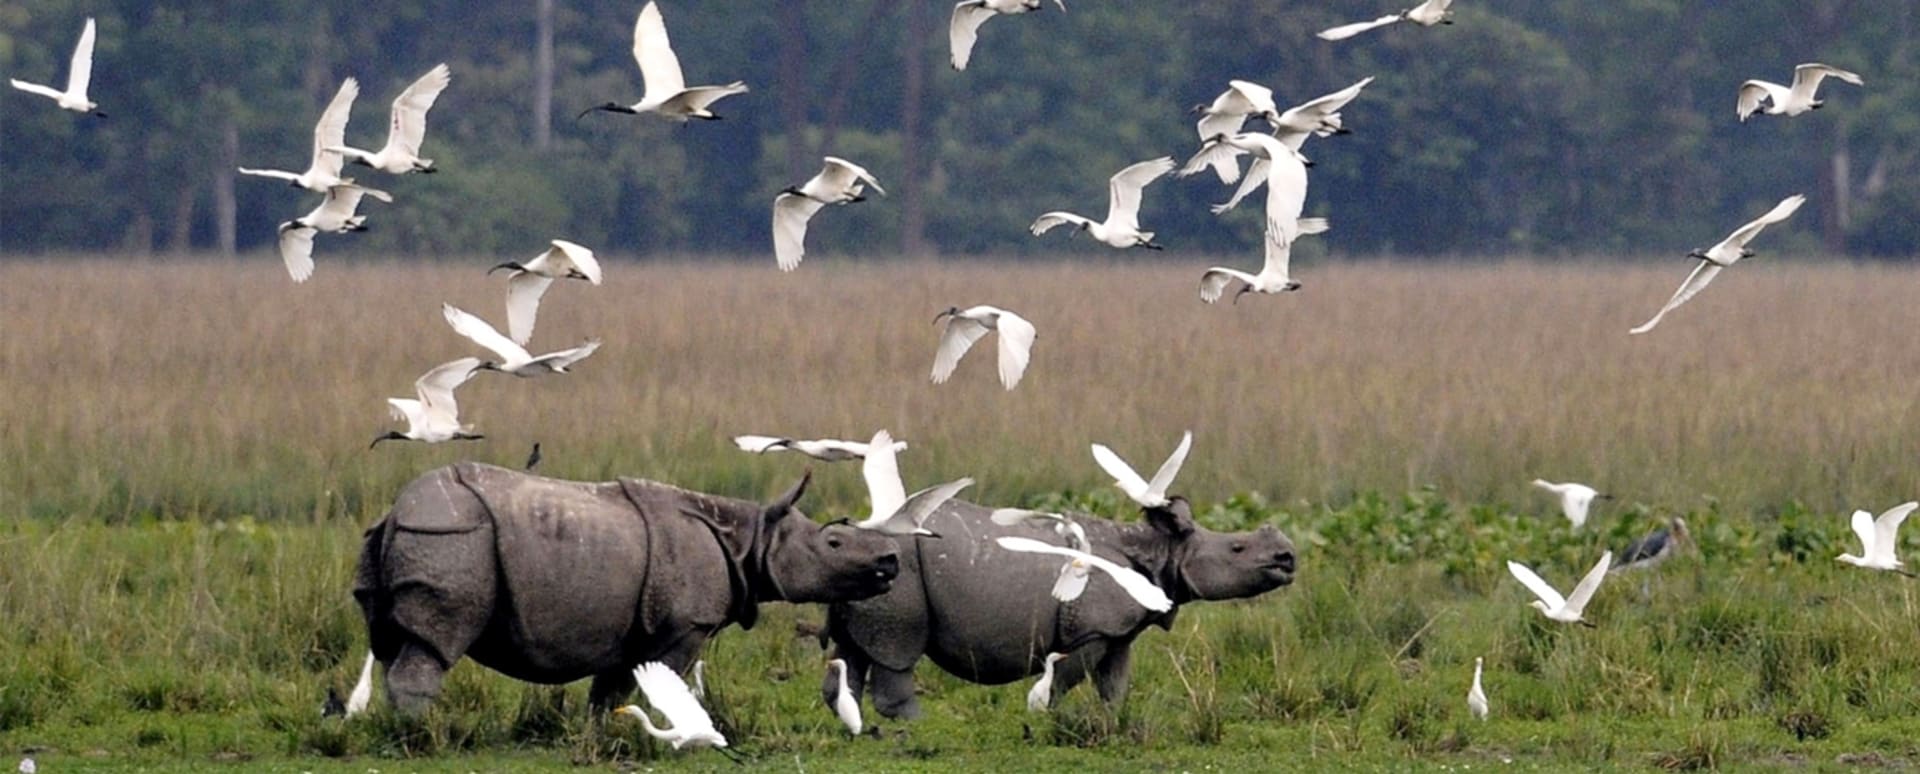 Díky specifické ochraně se podařilo populaci nosorožců značně rozmnožit.